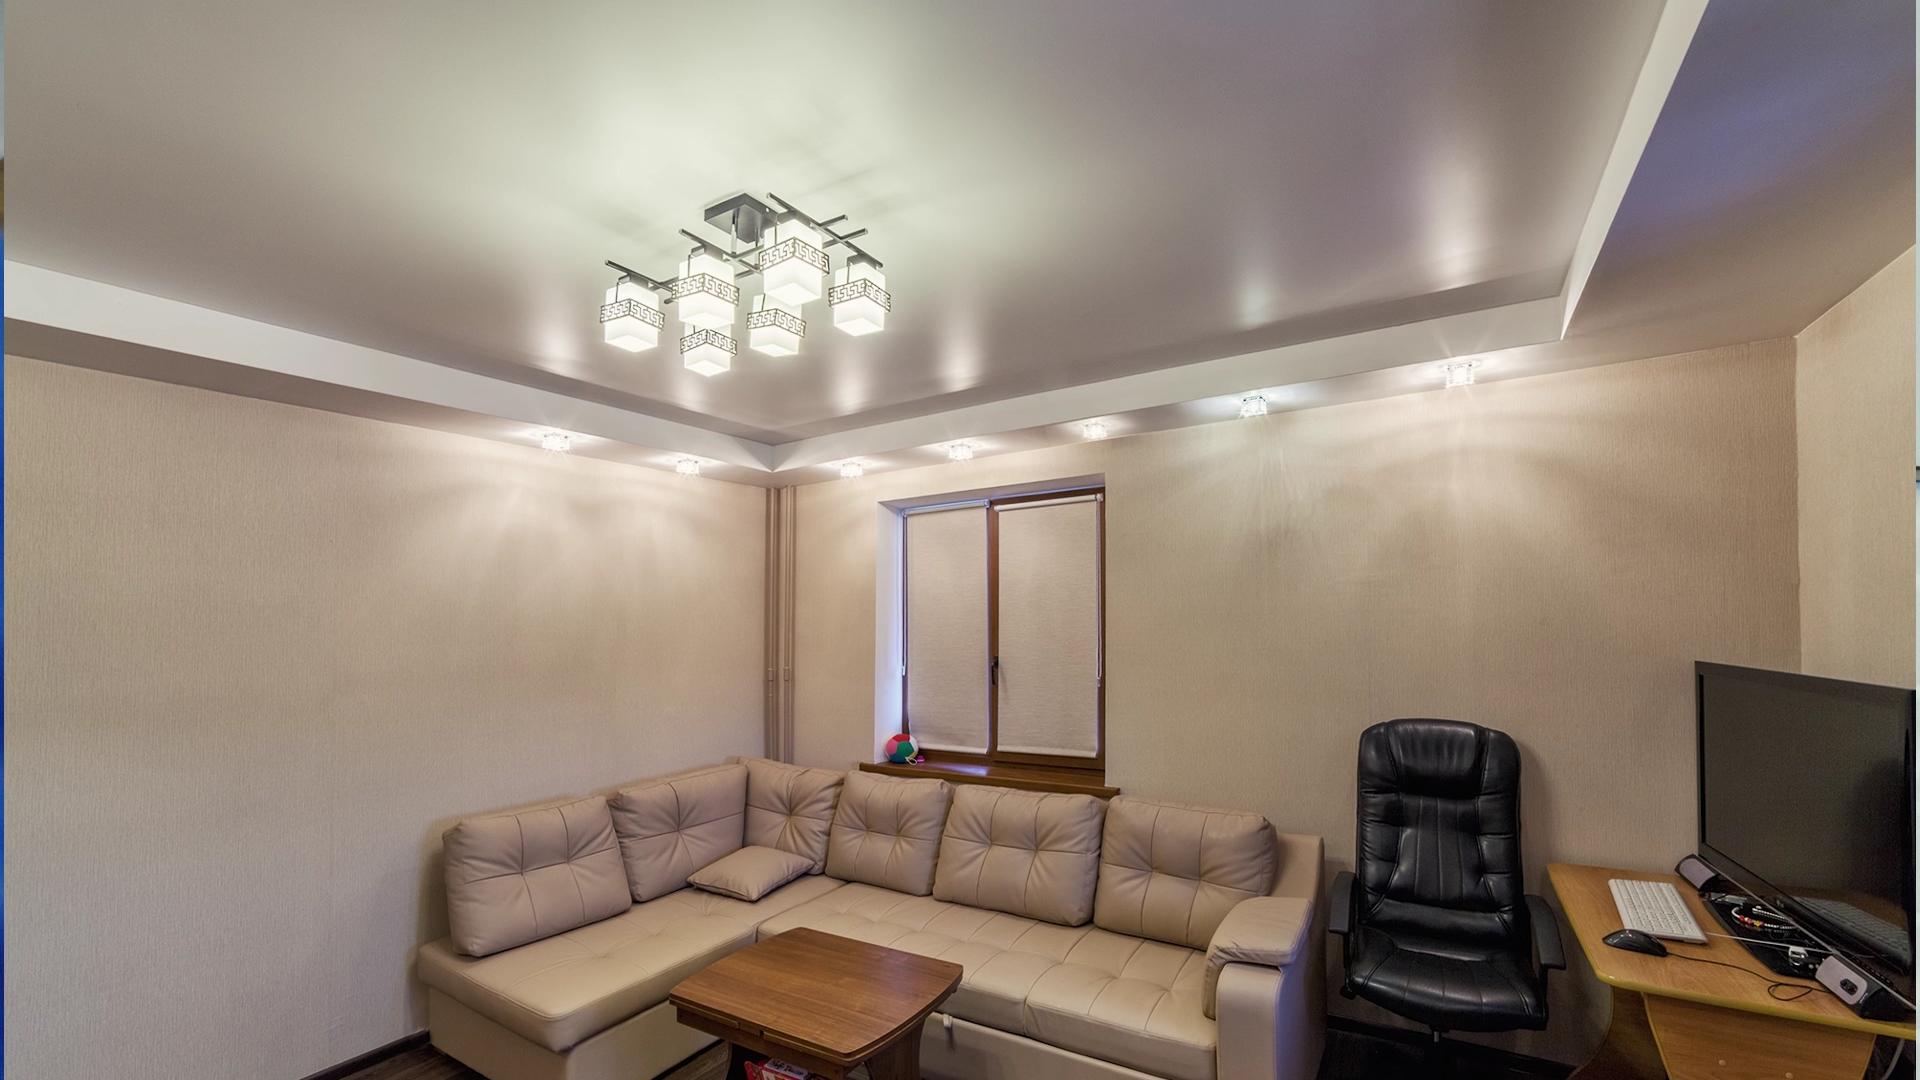 Освещение в гостиной с натяжными потолками: Секреты освещения в гостиной с натяжными потолками, советы дизайнера